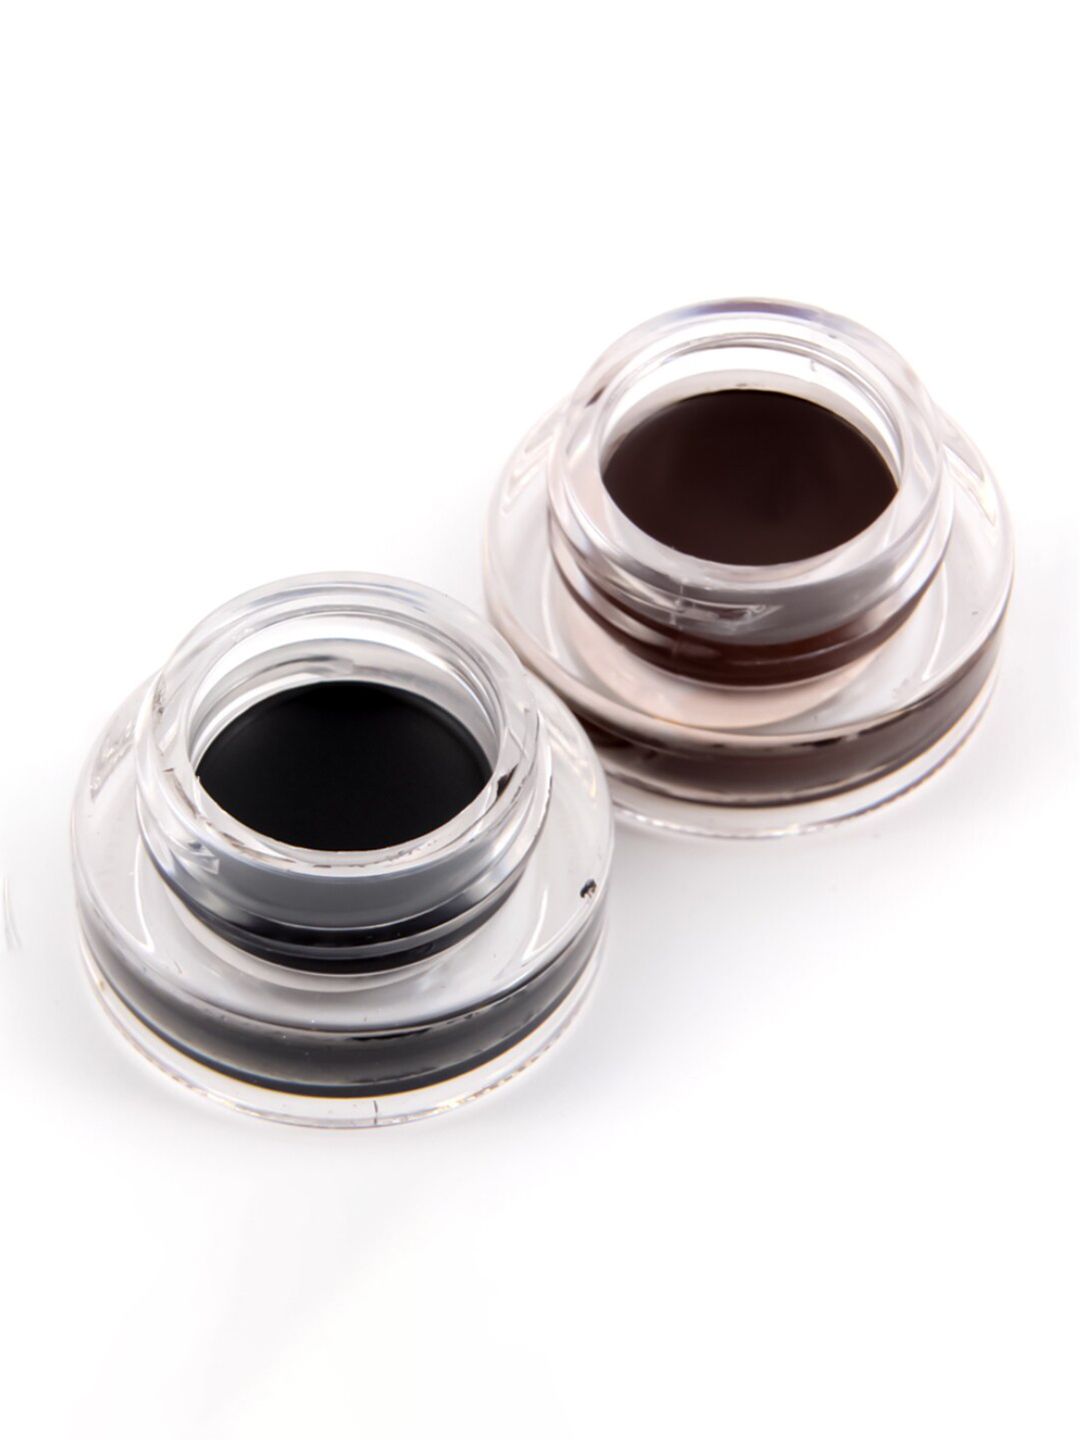 Miss Rose Pack of 2 Black & Brown Gel Eyeliner Smudge Proof 7402-109M Price in India